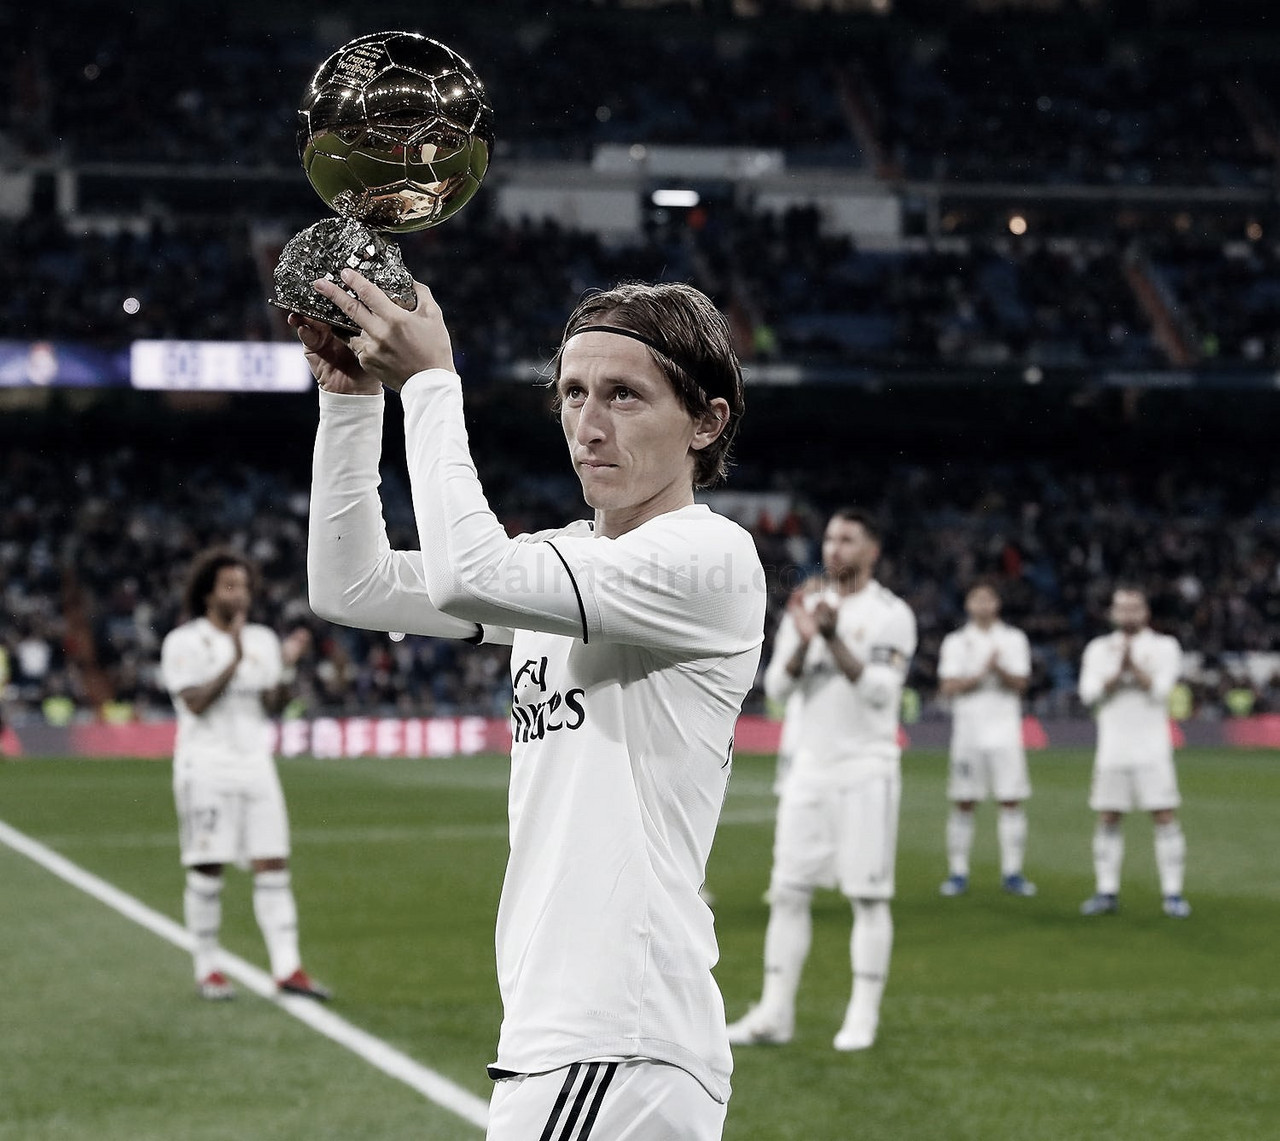 Real Madrid: 2018, el año en el que Modric destronó a los reyes del fútbol

